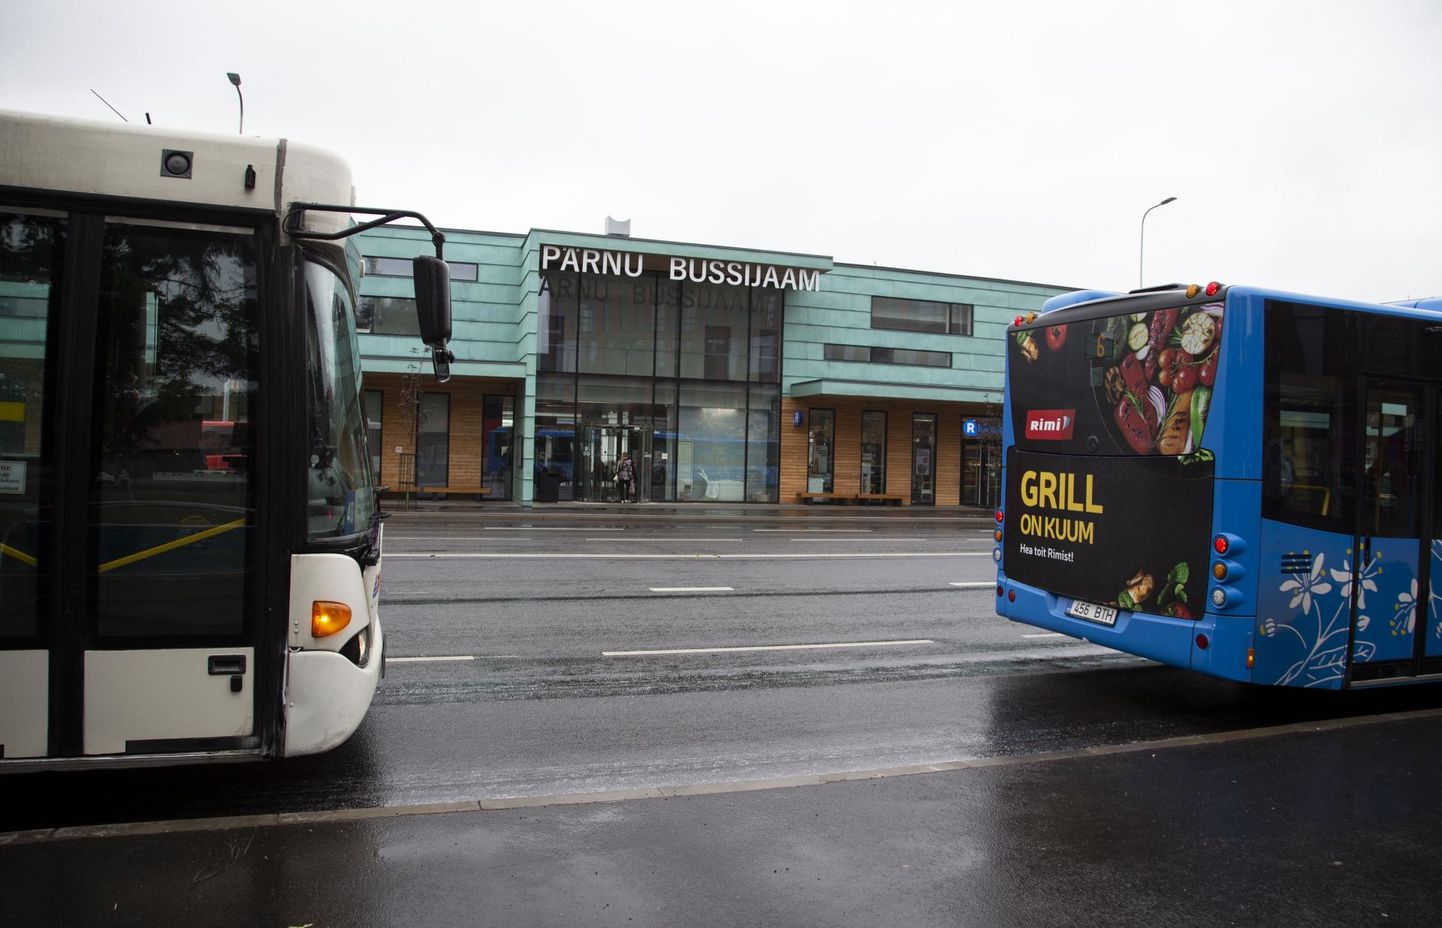 Peatustest on suurimate sõitjate arvuga Pärnu bussijaam.